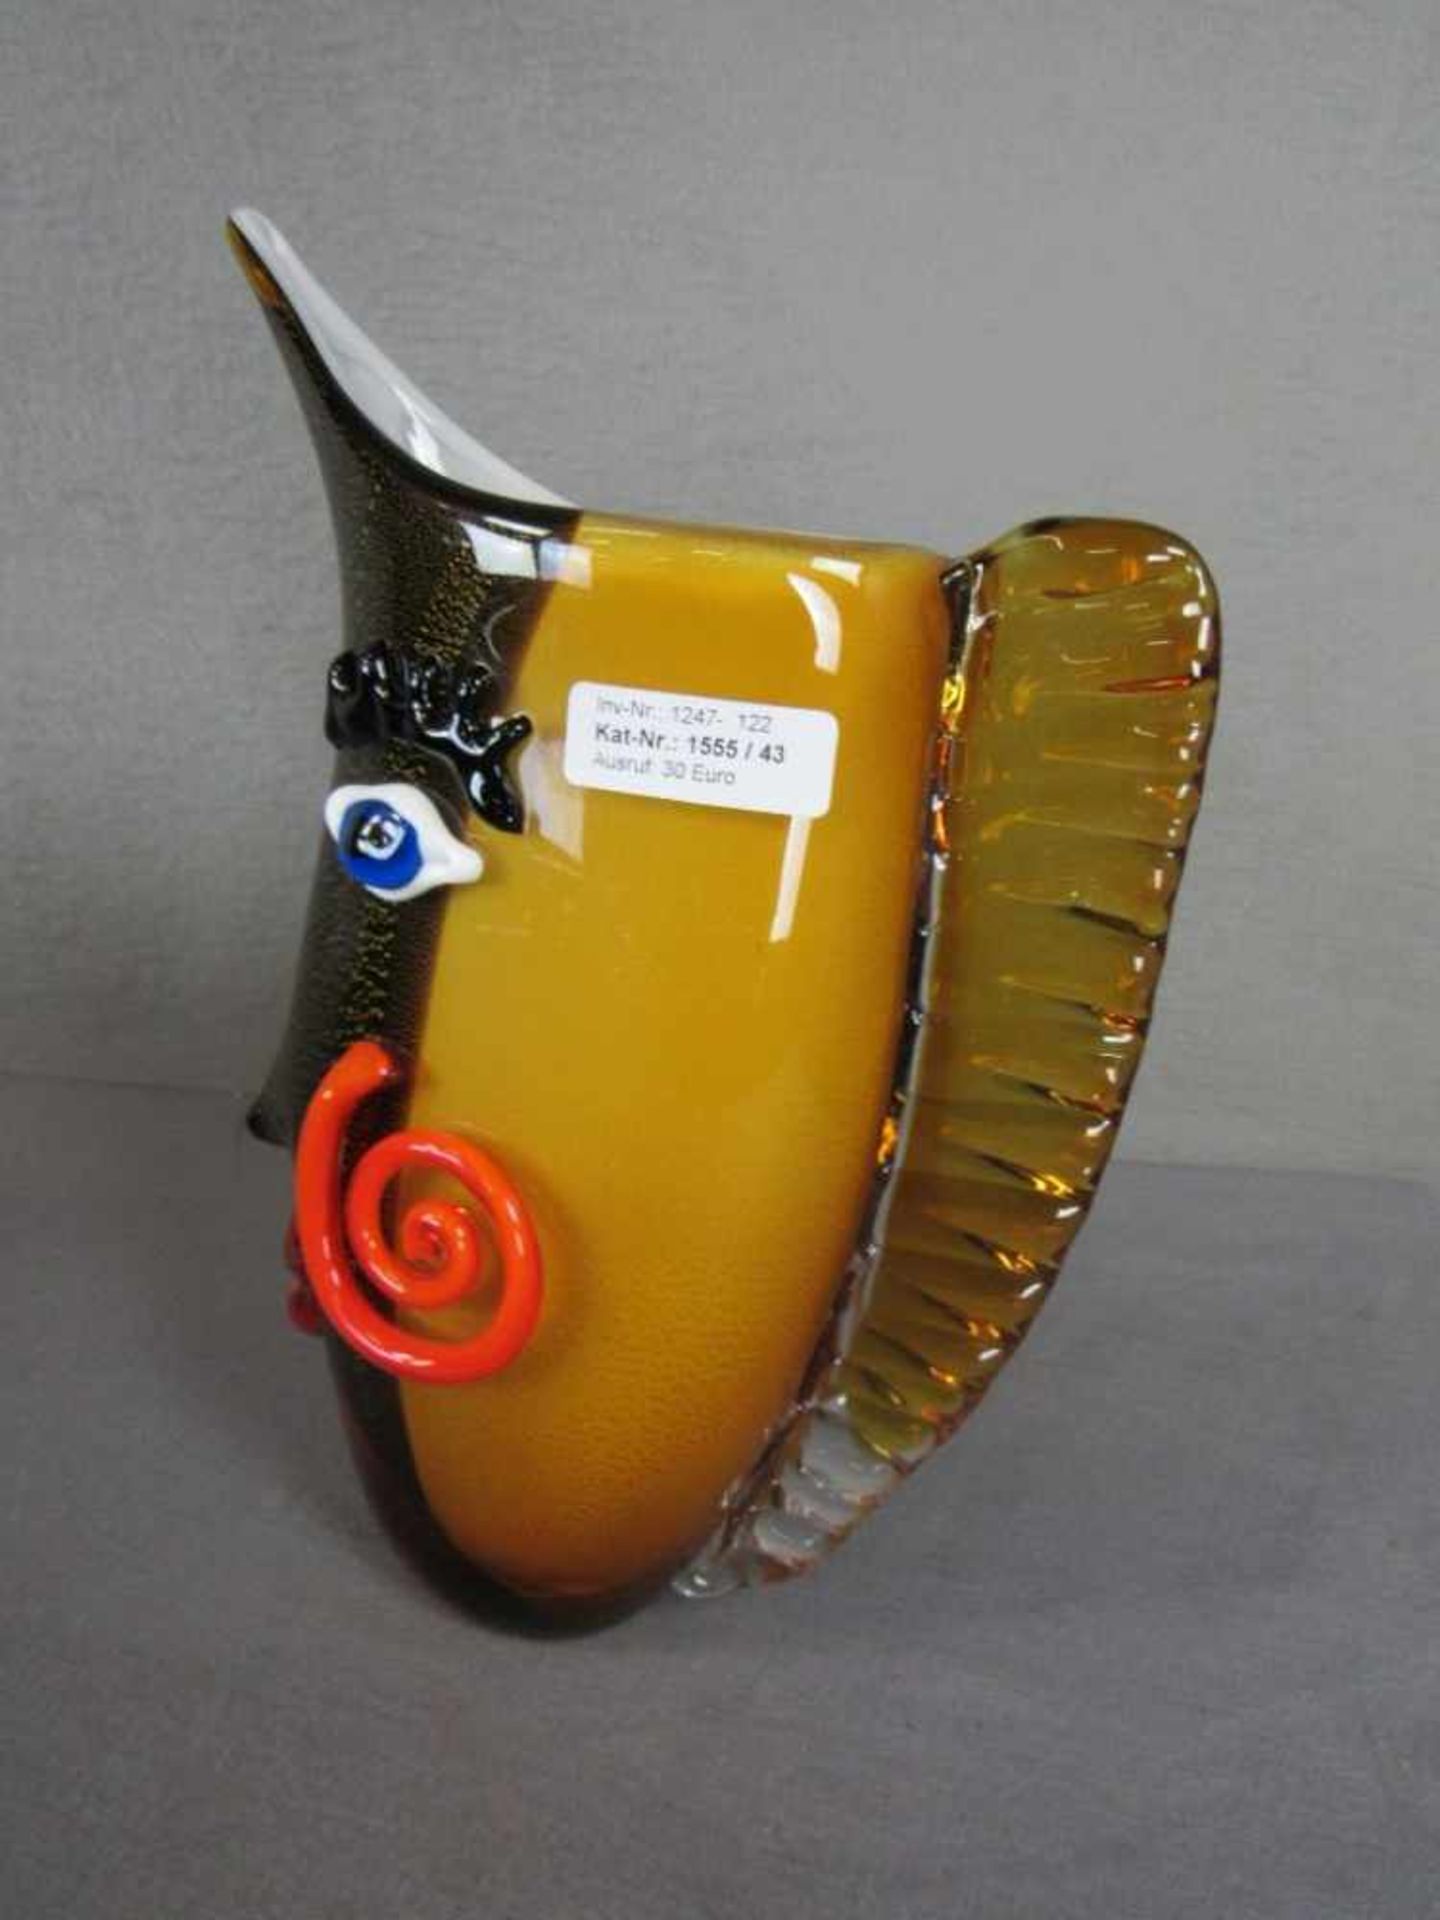 Glasskulptur Design Krug mit Gesichtsform ca.32cm hoch- - -20.00 % buyer's premium on the hammer